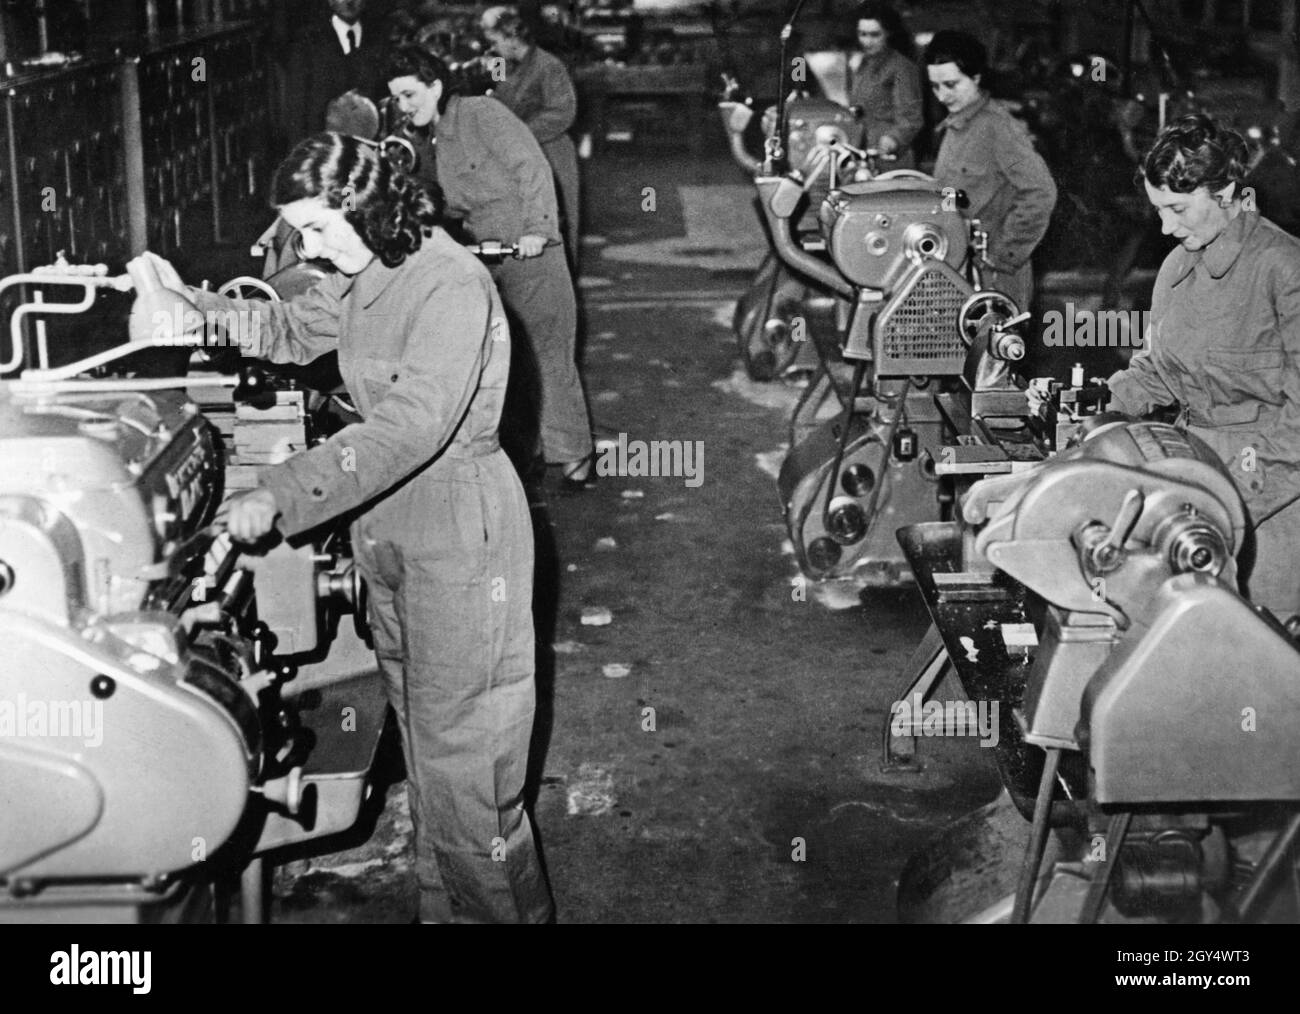 También en Italia, durante la Segunda Guerra Mundial, muchas mujeres  asumieron empleos que anteriormente habían sido predominantemente ocupados  por hombres. Esto fue provocado por la escasez de mano de obra causada por